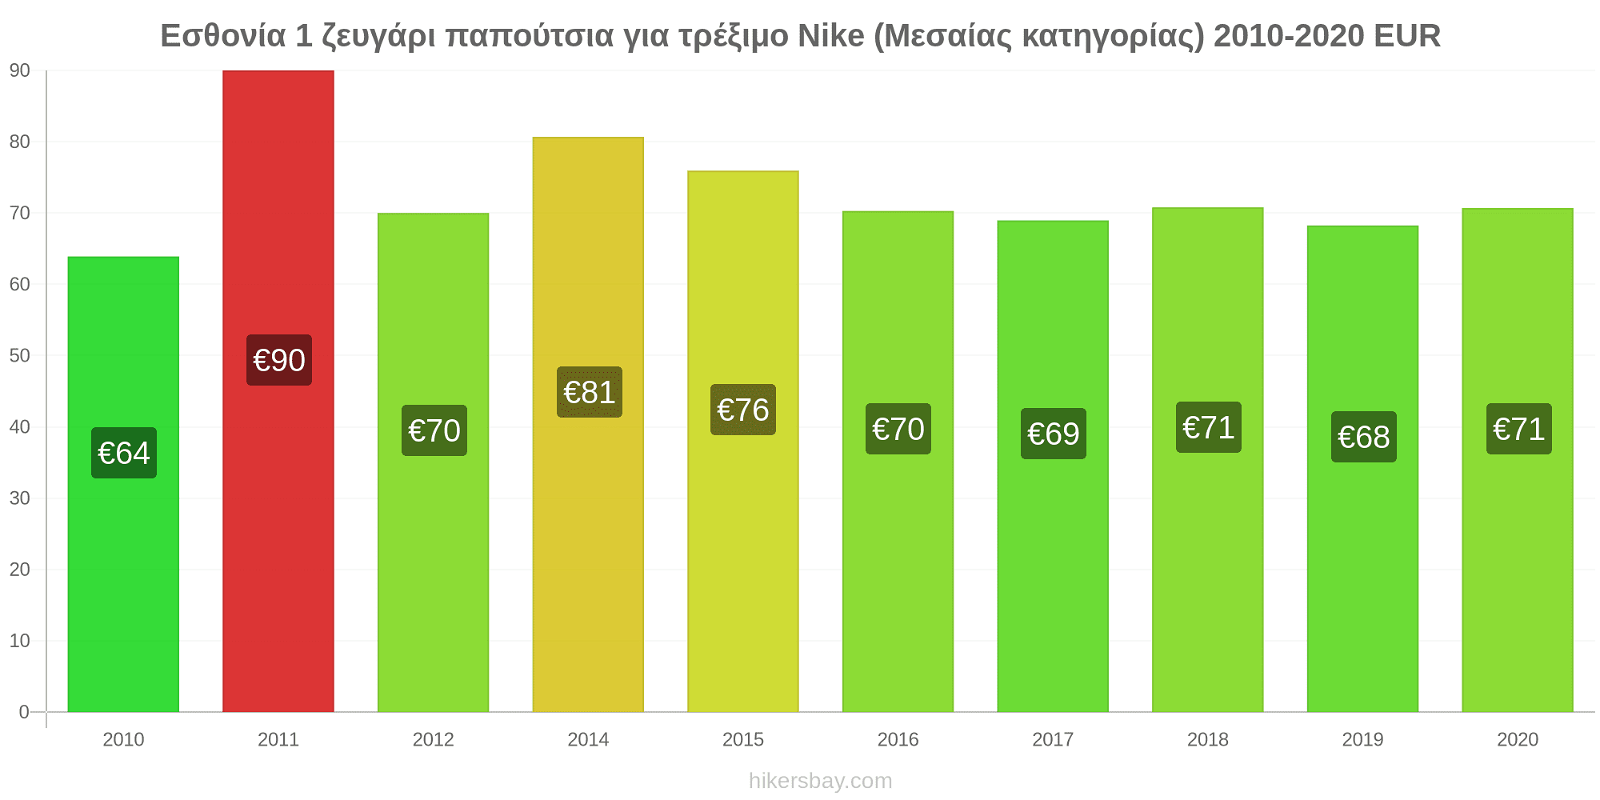 Εσθονία αλλαγές τιμών 1 ζευγάρι παπούτσια για τρέξιμο Nike (Μεσαίας κατηγορίας) hikersbay.com